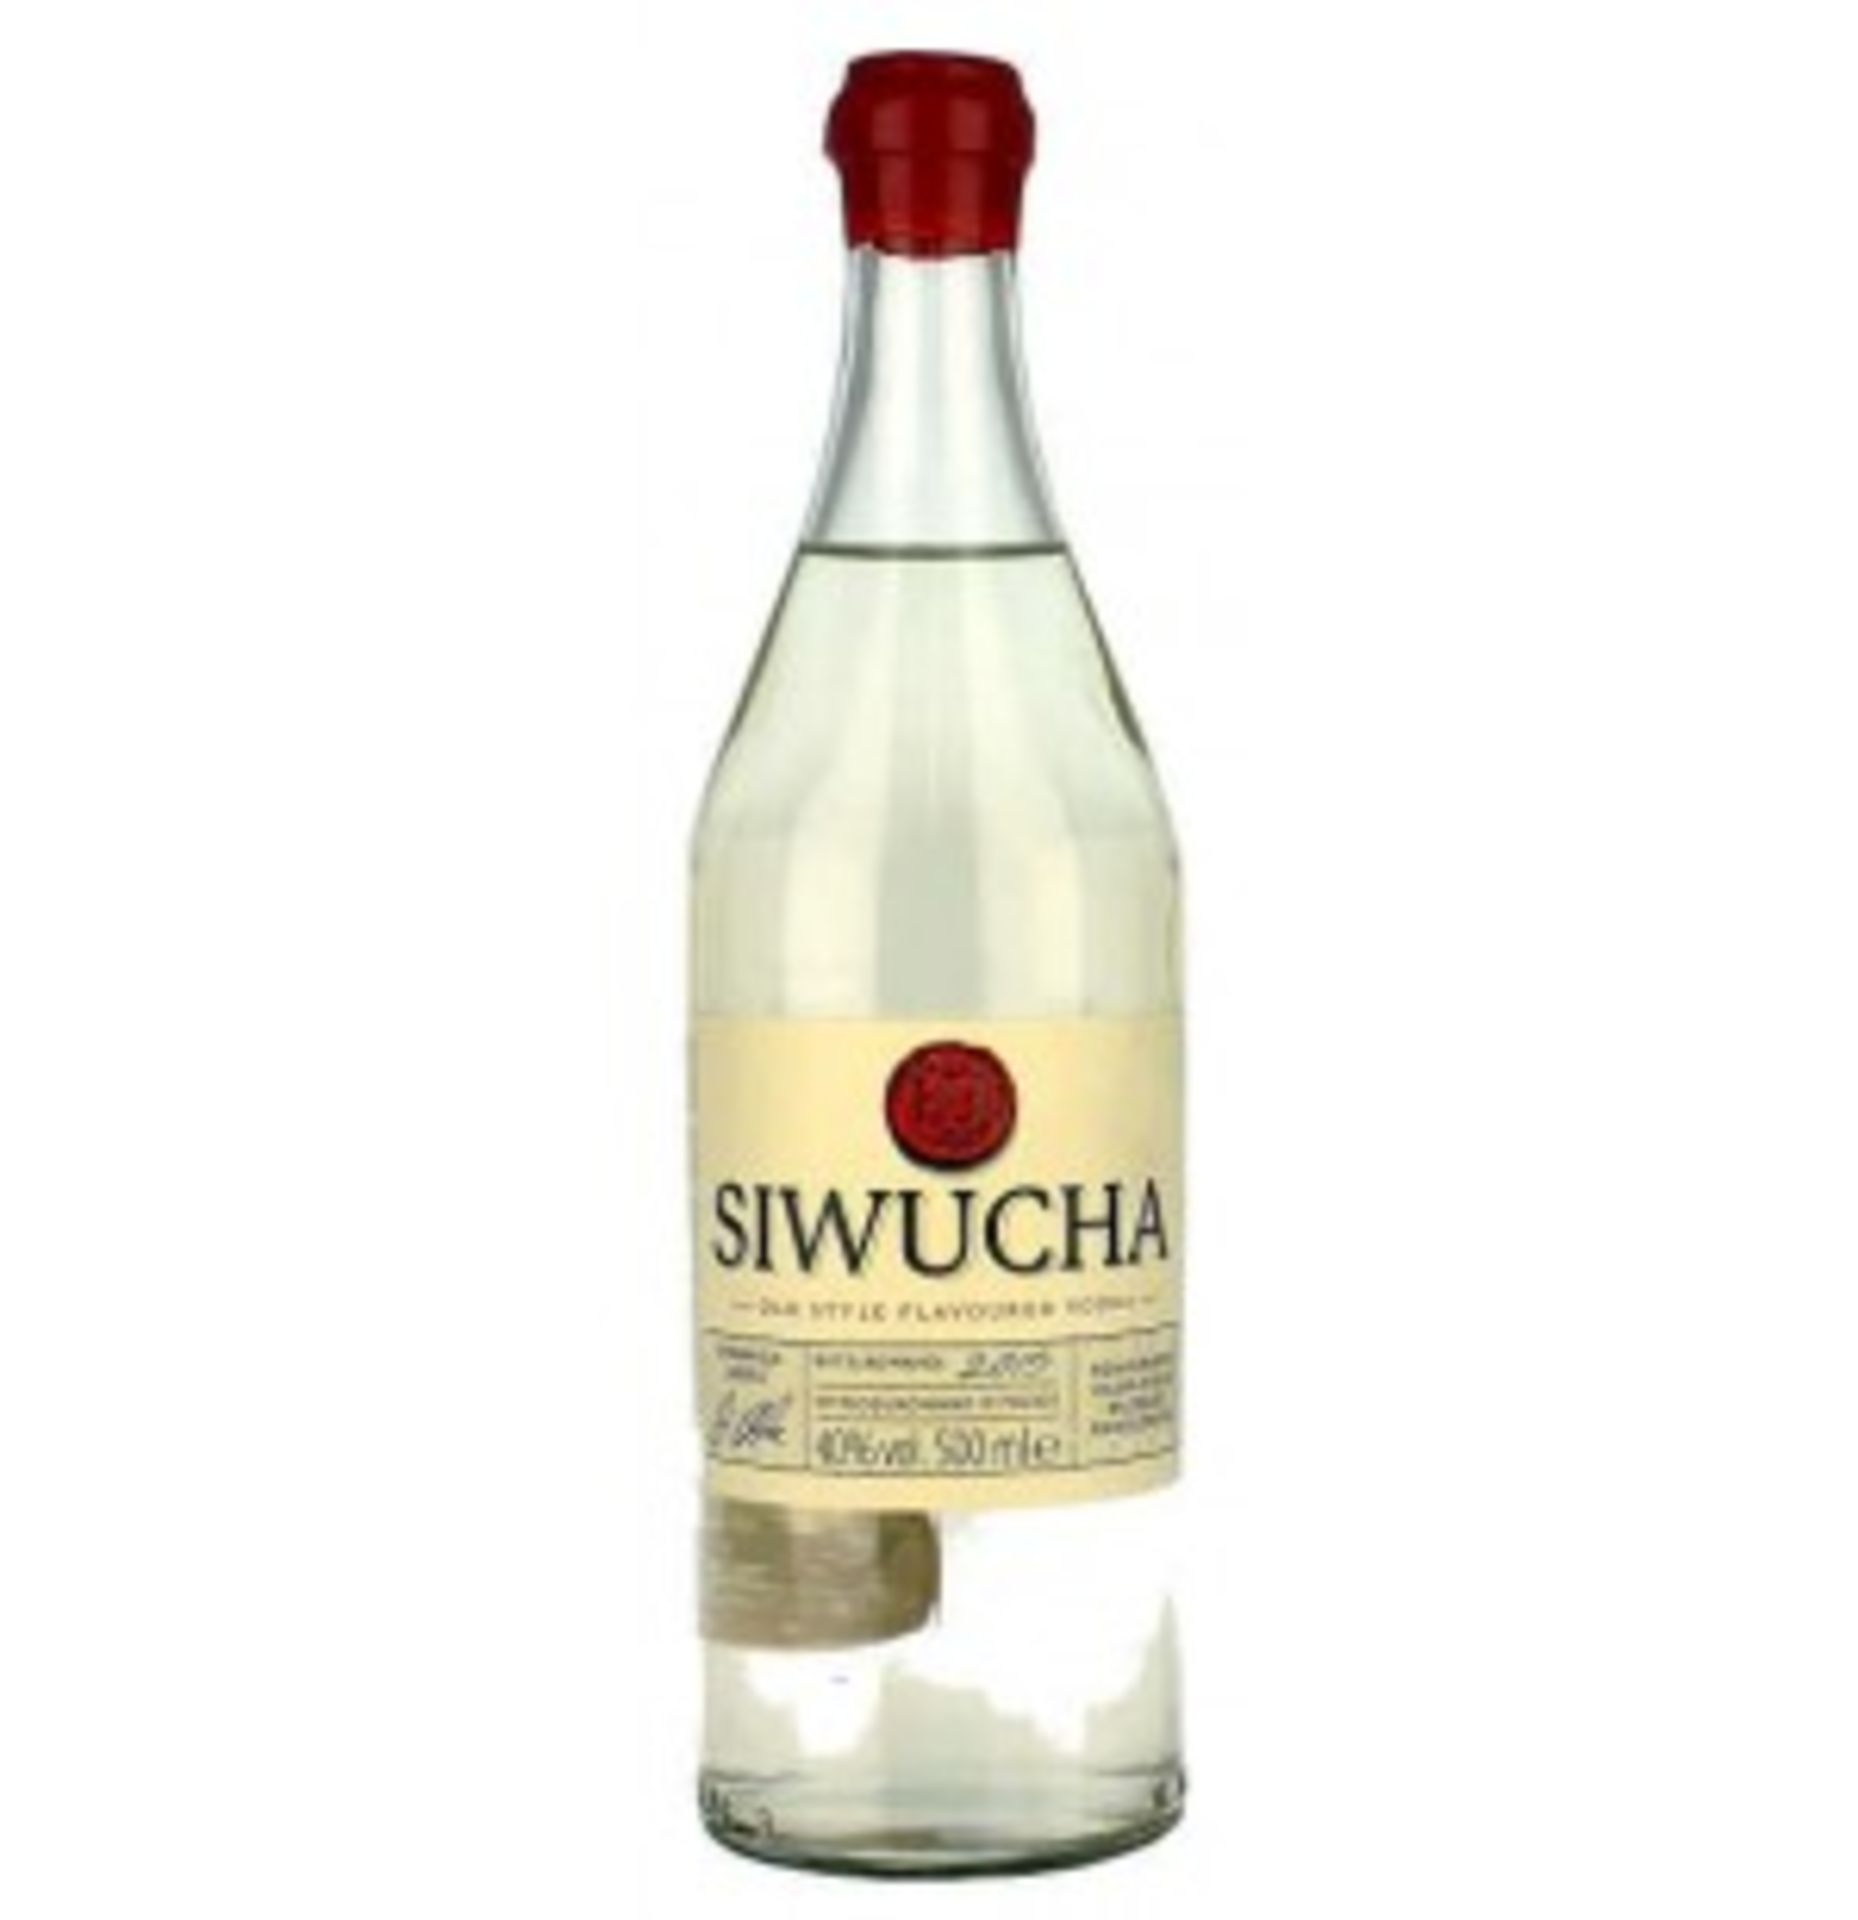 V Brand New Siwucha 500ml Vodka - Total Online Price £27.83 (La Maison du Whisky)